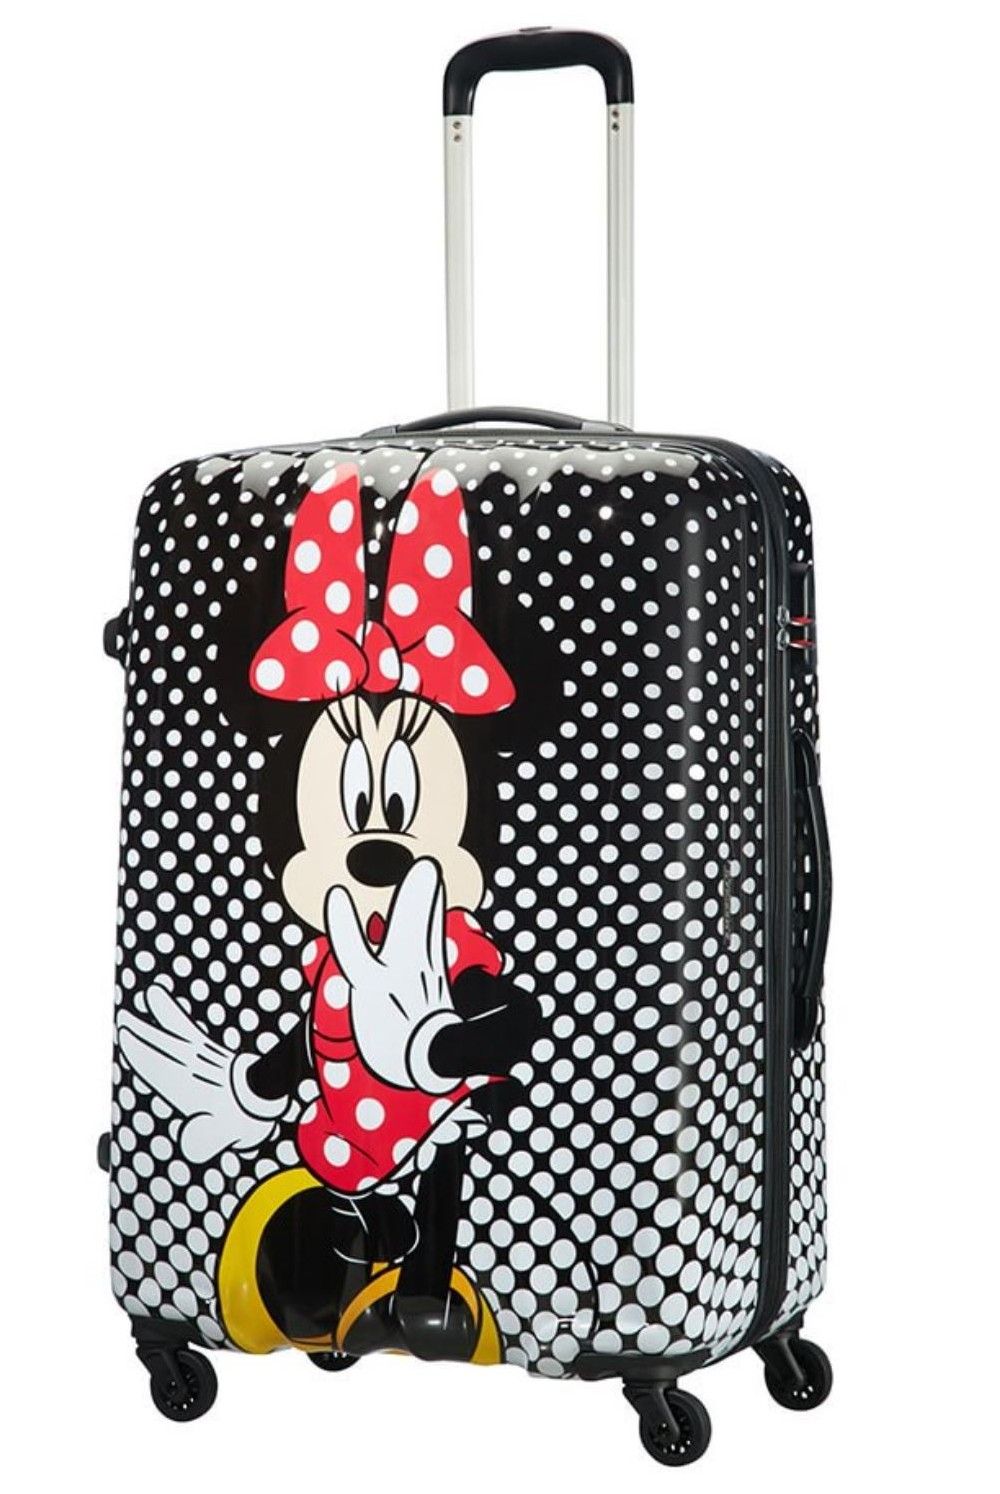 AT children's suitcase Minnie Polka Dots 75cm 88 Liter